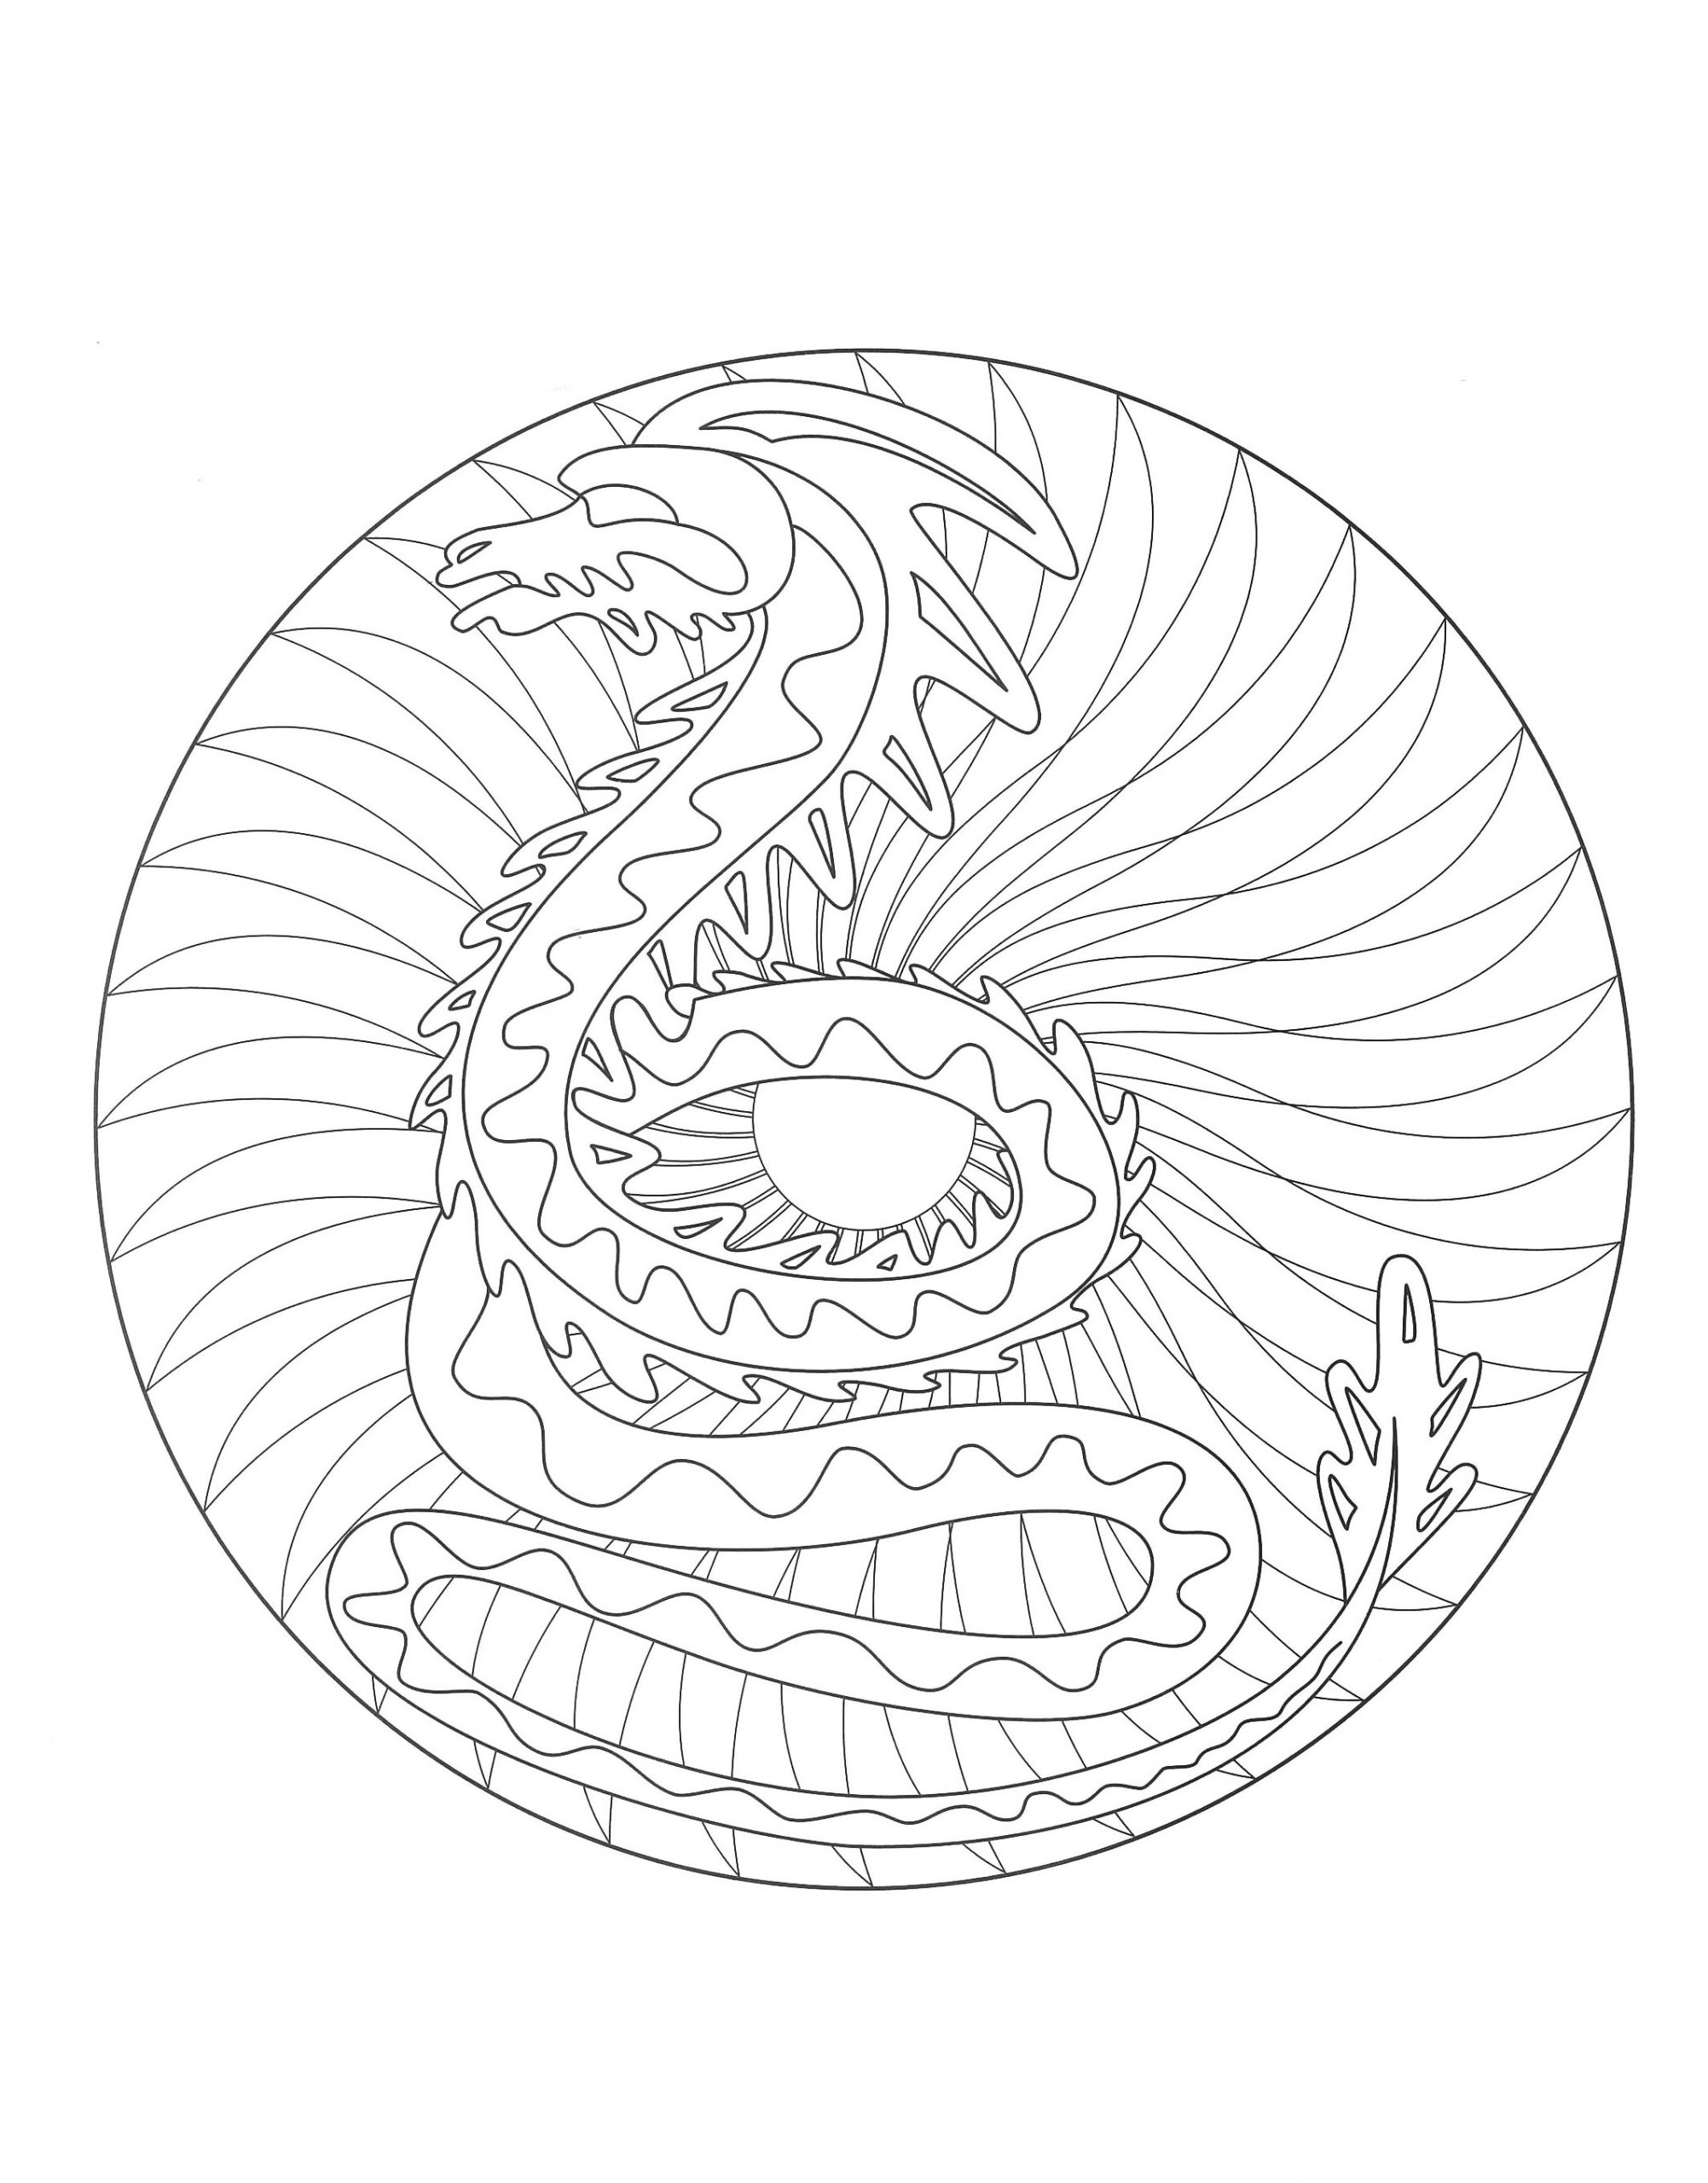 A Imprimer Mandala Dragon 2 - Coloriage Mandalas serapportantà Mandala Facile À Imprimer